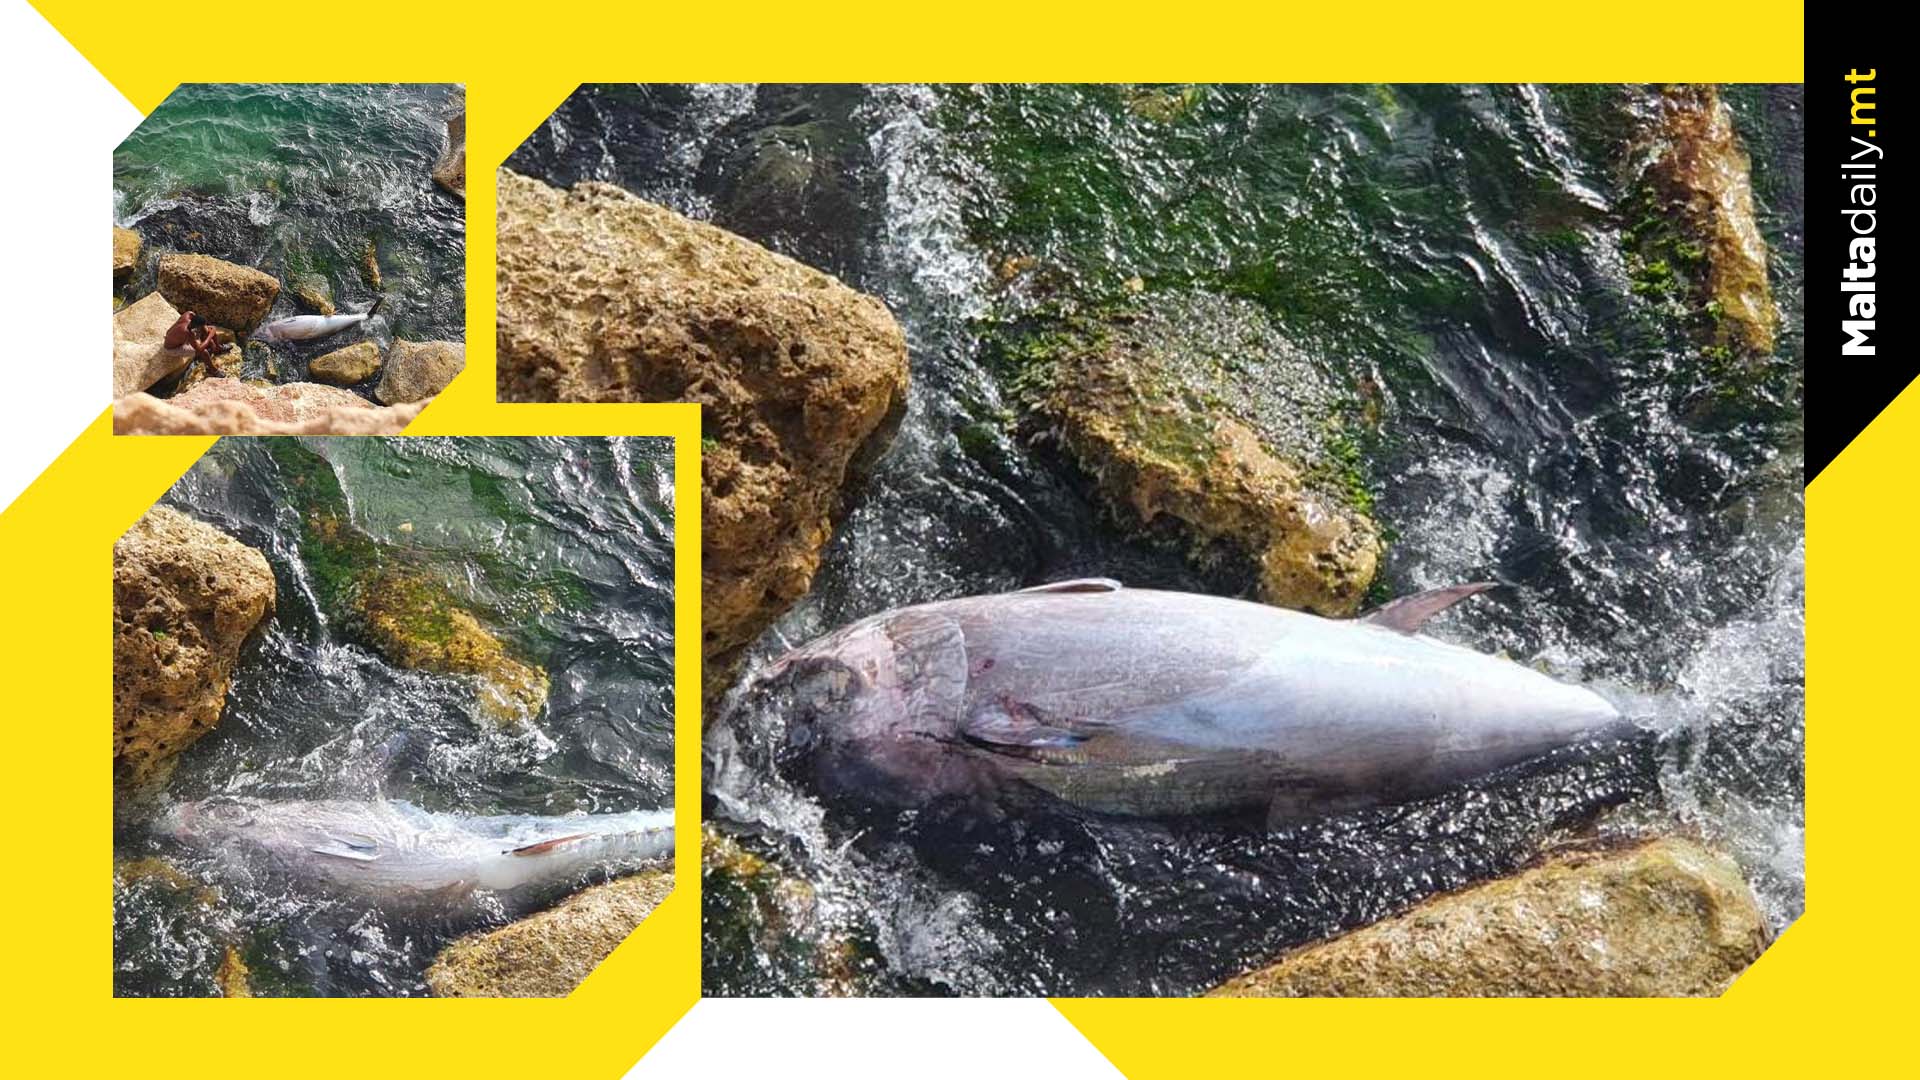 Dead Tuna Spotted Washed Up Dead In Xgħajra